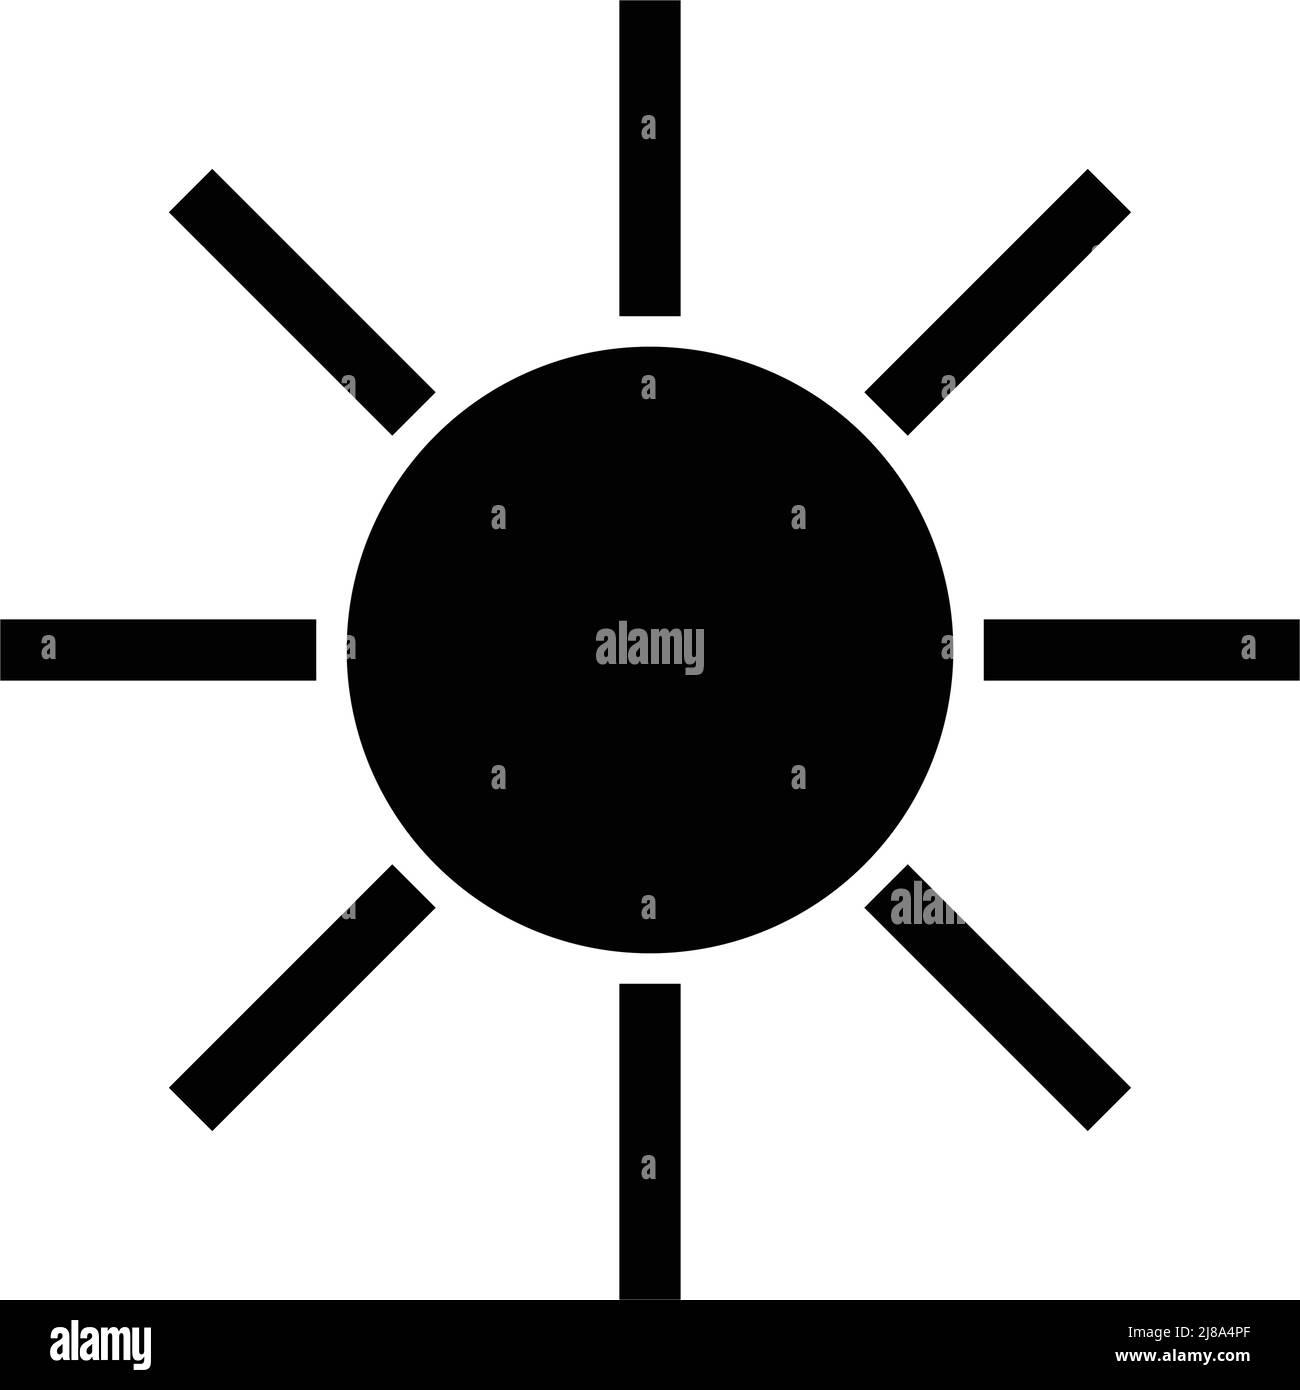 Icona della silhouette del sole. Vettore che può essere utilizzato per regolare la luminosità e altro ancora. Vettore modificabile. Illustrazione Vettoriale